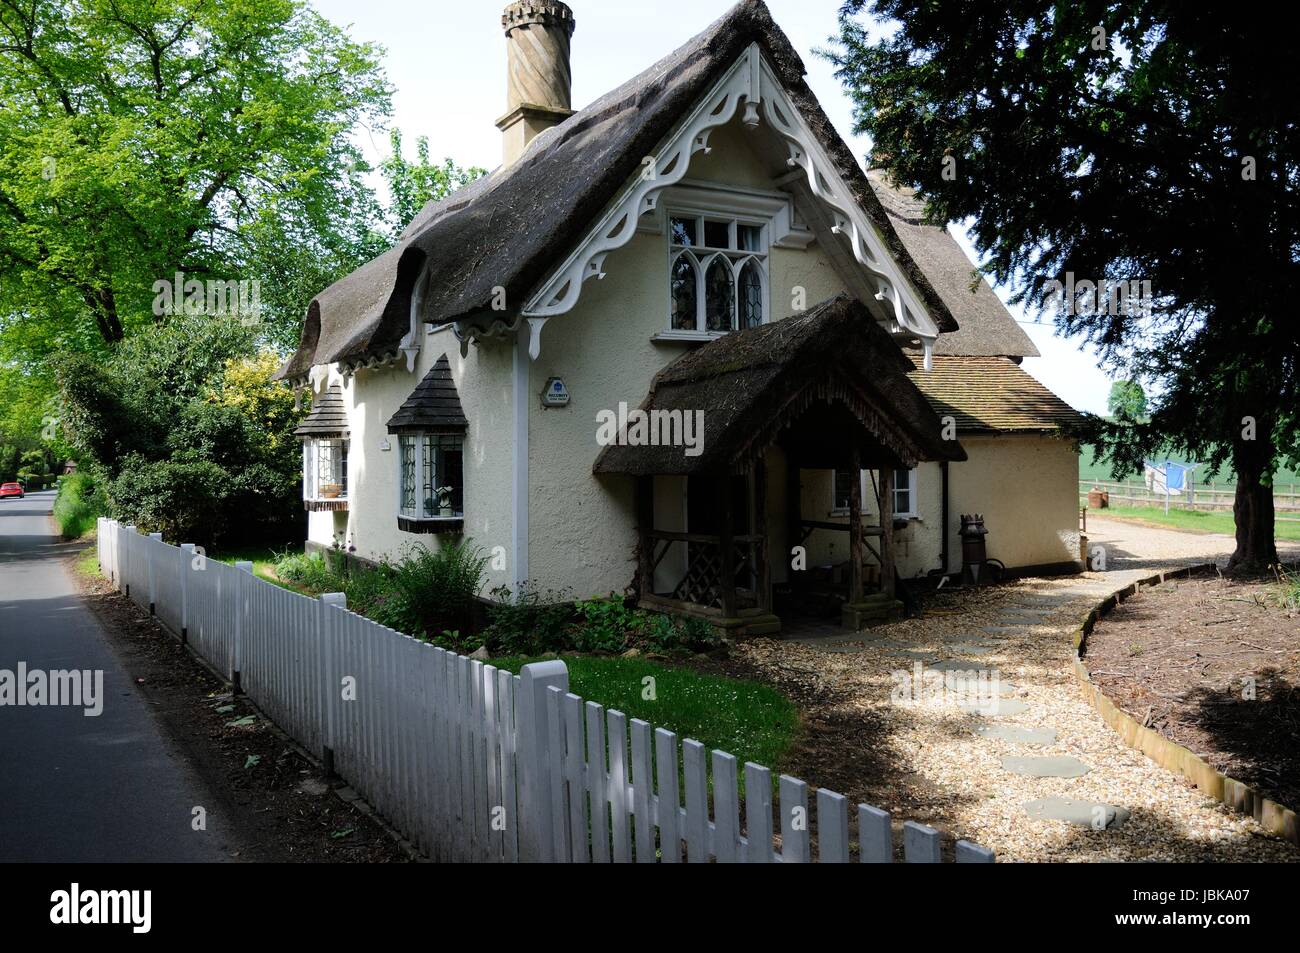 La casa di paglia, Old Warden. Bedfordshire, è una station wagon Ongley cottage costruito nel cottage in stile ornee con sopracciglio finestre dormer nel suo attico Foto Stock